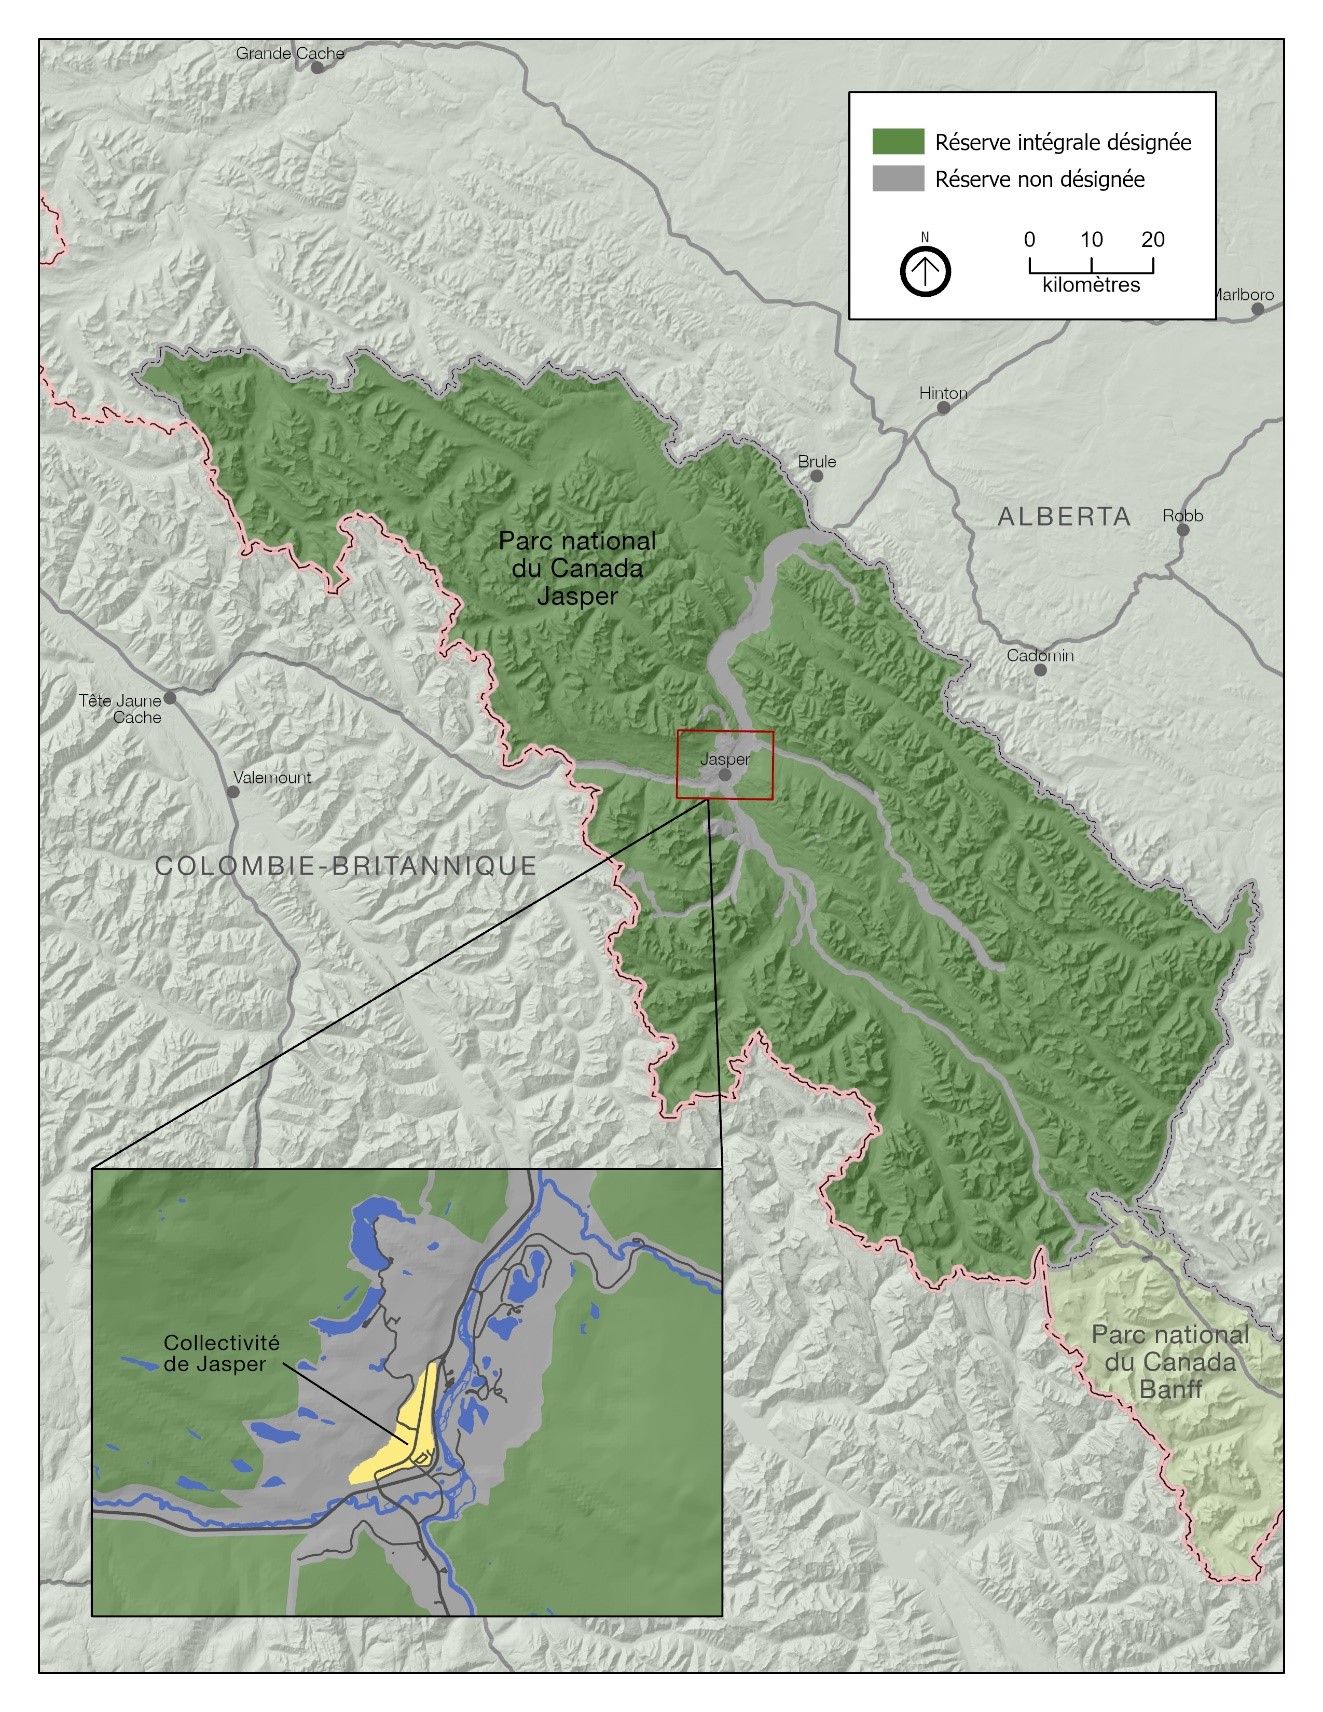 Carte du parc national Jasper montrant la zone « Réserve intégrale désignée » et la zone « Réserve non désignée » du parc.